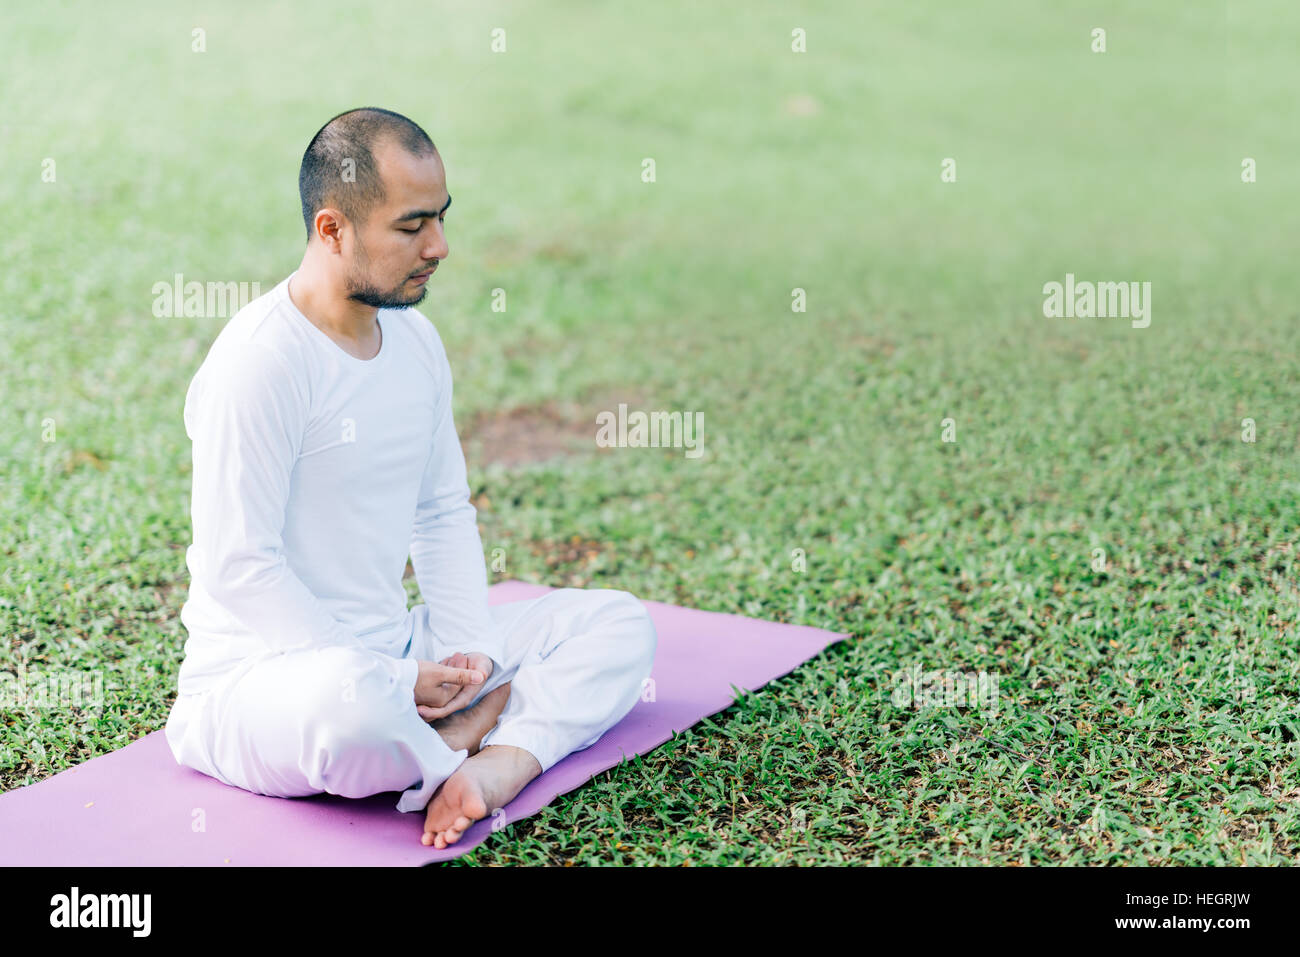 Bel asiatique homme méditant sur l'herbe verte dans le parc, calme et concentré, de la santé et de la méditation de yoga concept, with copy space Banque D'Images